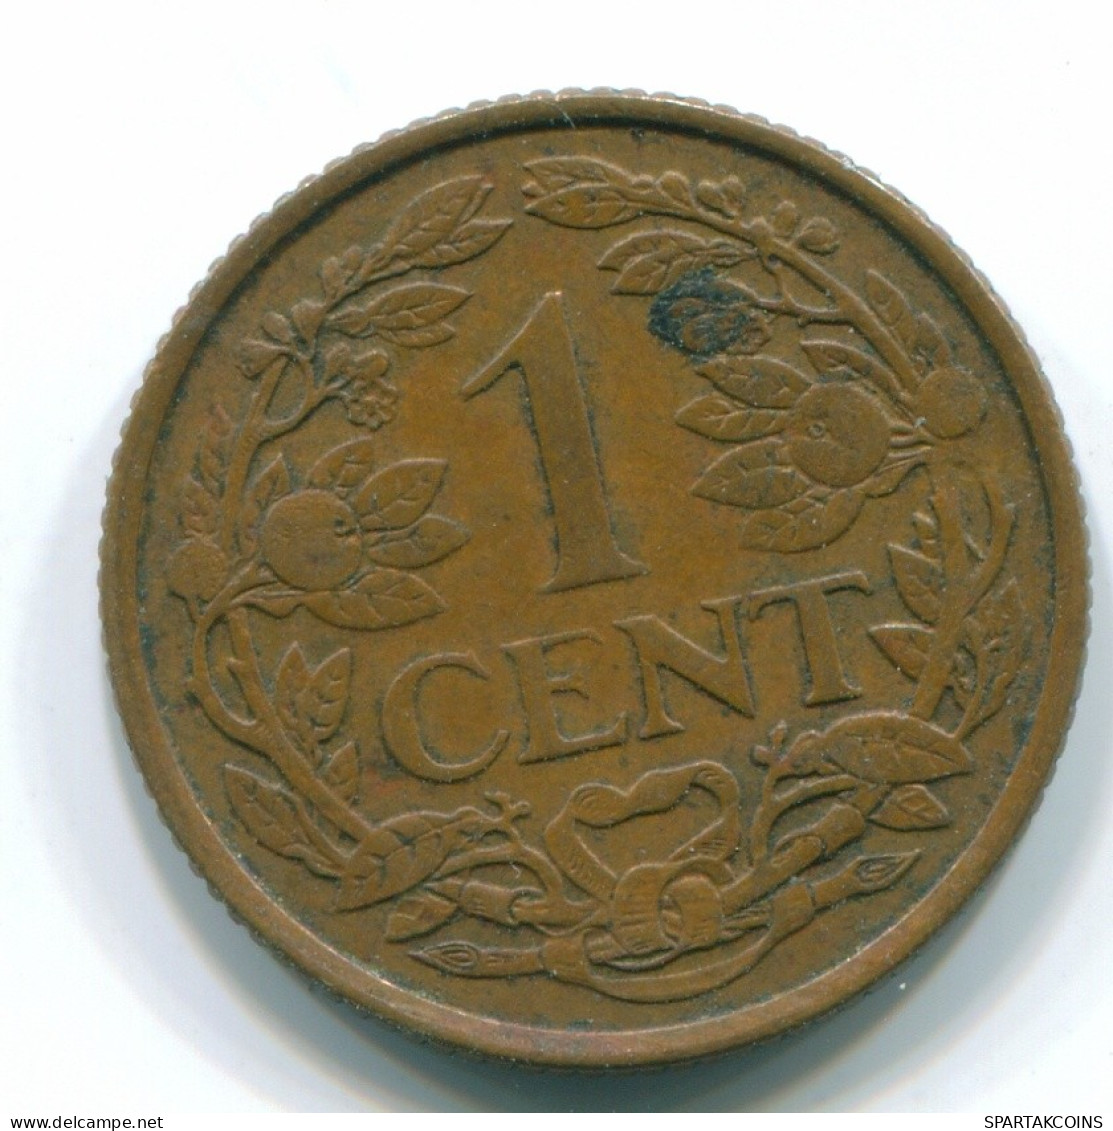 1 CENT 1963 ANTILLAS NEERLANDESAS Bronze Fish Colonial Moneda #S11096.E.A - Antilles Néerlandaises